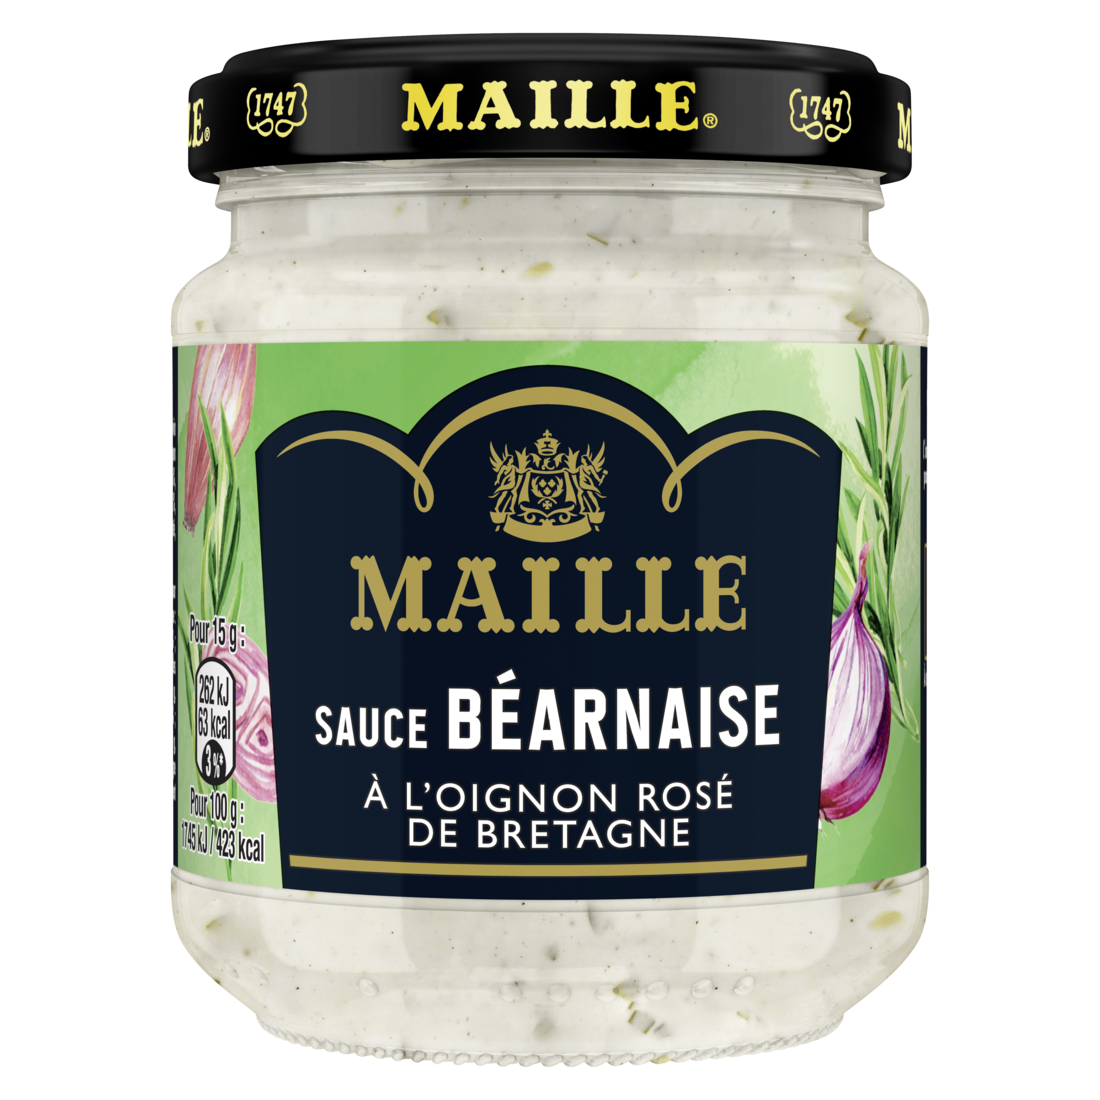 Maille Sauce Béarnaise, Oignon rosé de Bretagne, 185 g front